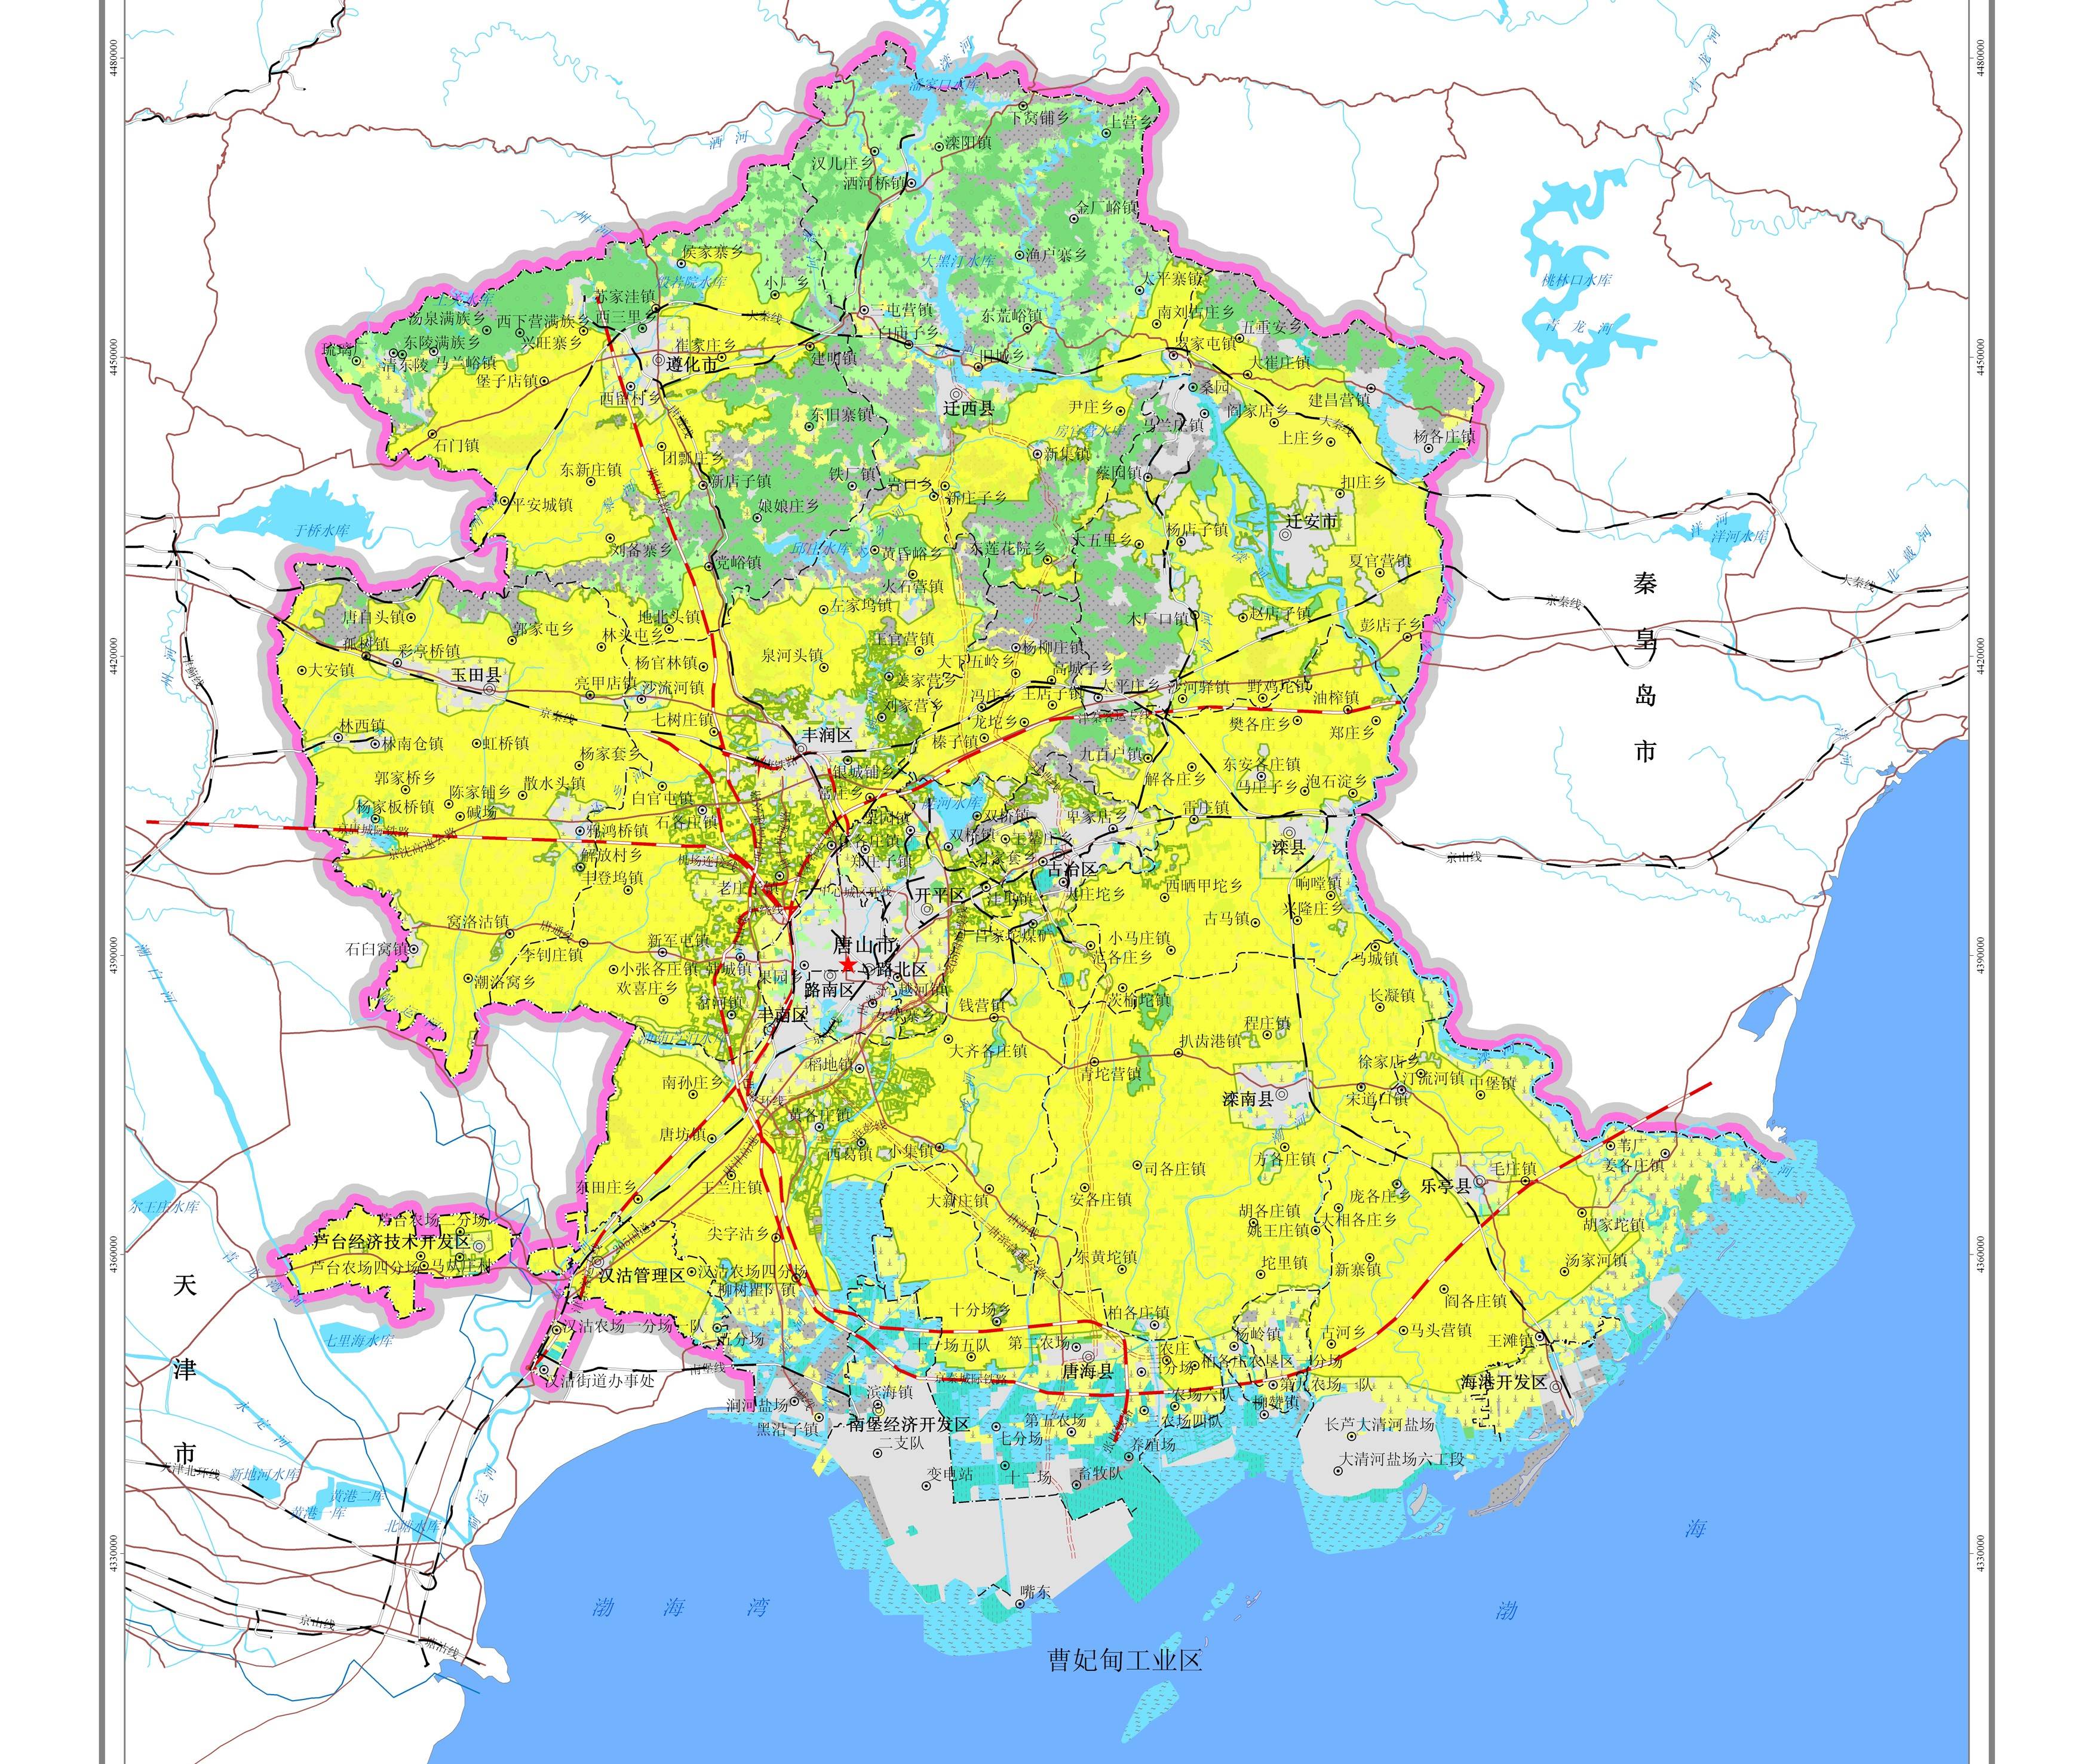 唐山市区片区分布图图片